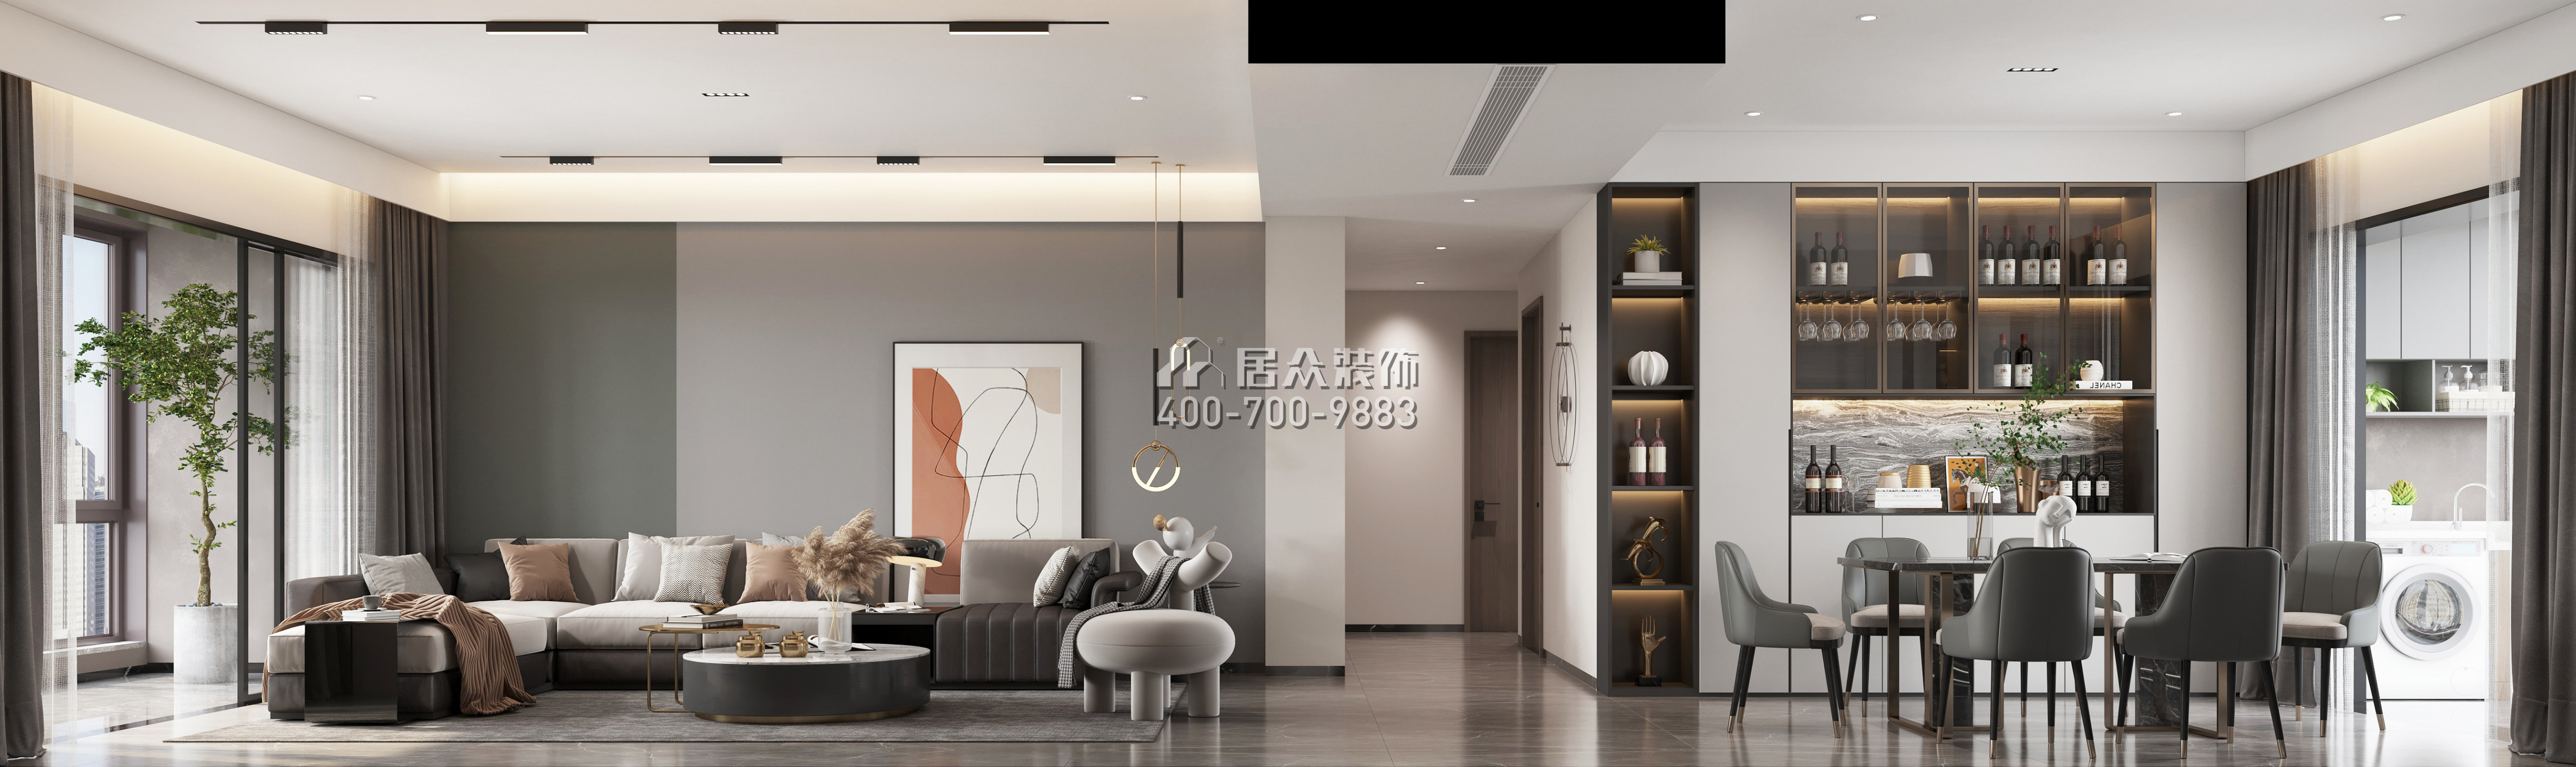 翠湖香山别苑139平方米现代简约风格平层户型客餐厅一体装修效果图